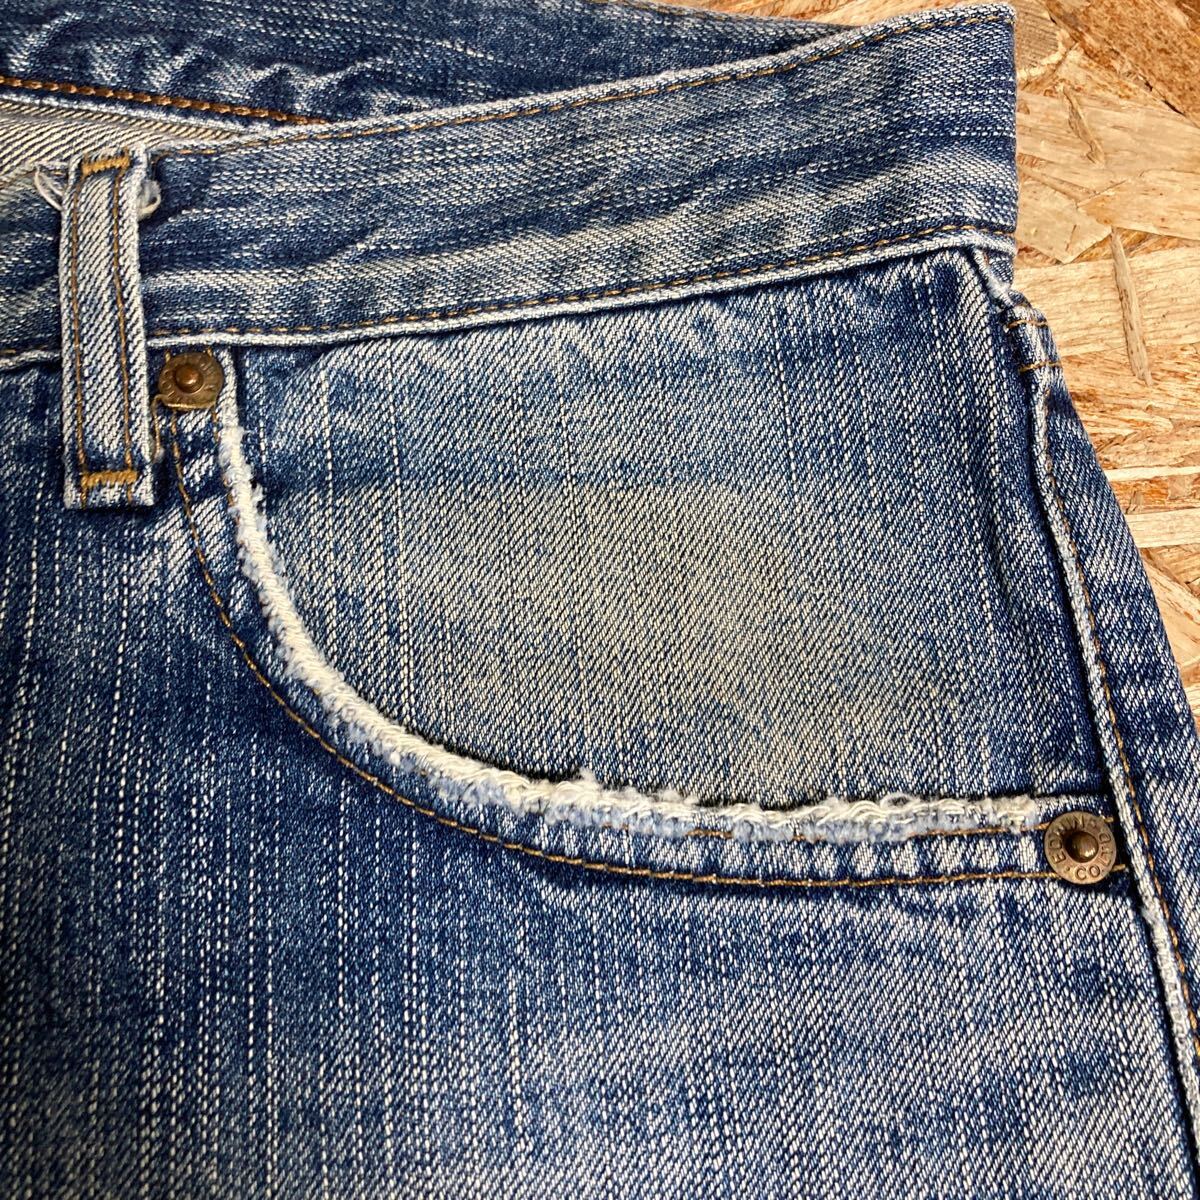 D-1243 EDWIN Edwin 503Z Denim брюки W31 б/у обработка джинсы ji- хлеб сделано в Японии 